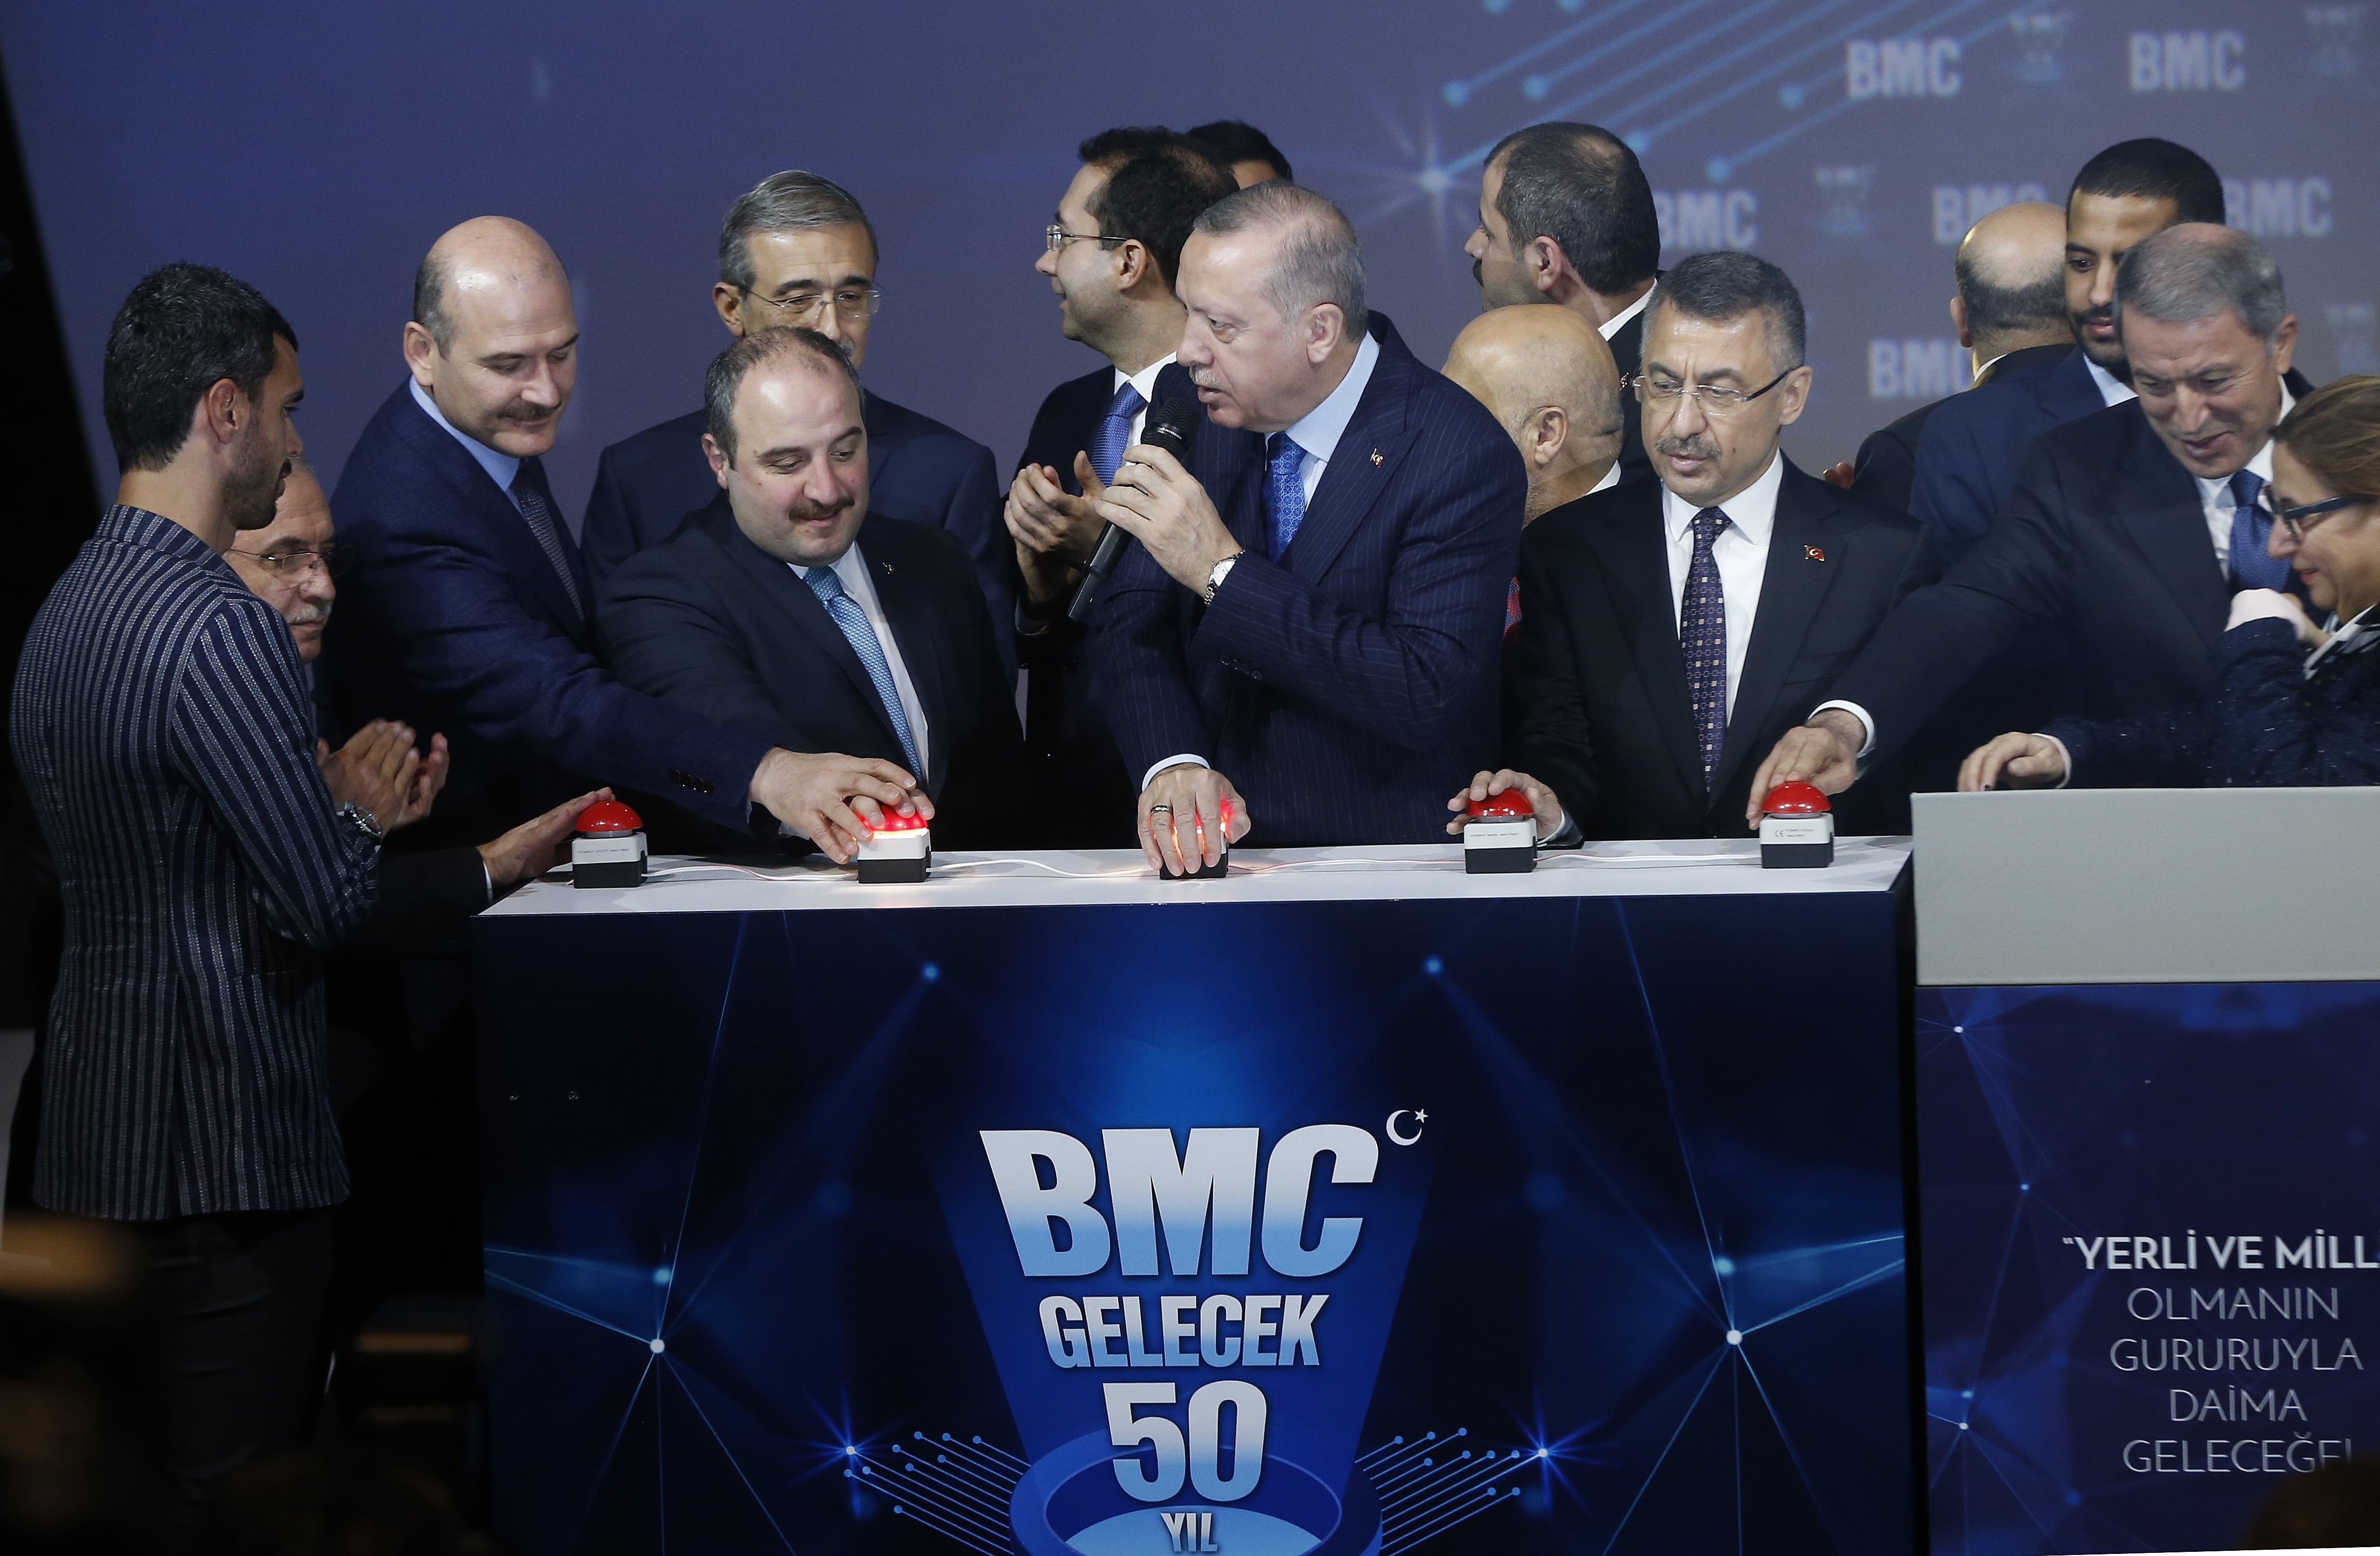 BMC Gelecek 50 Yıl Buluşması